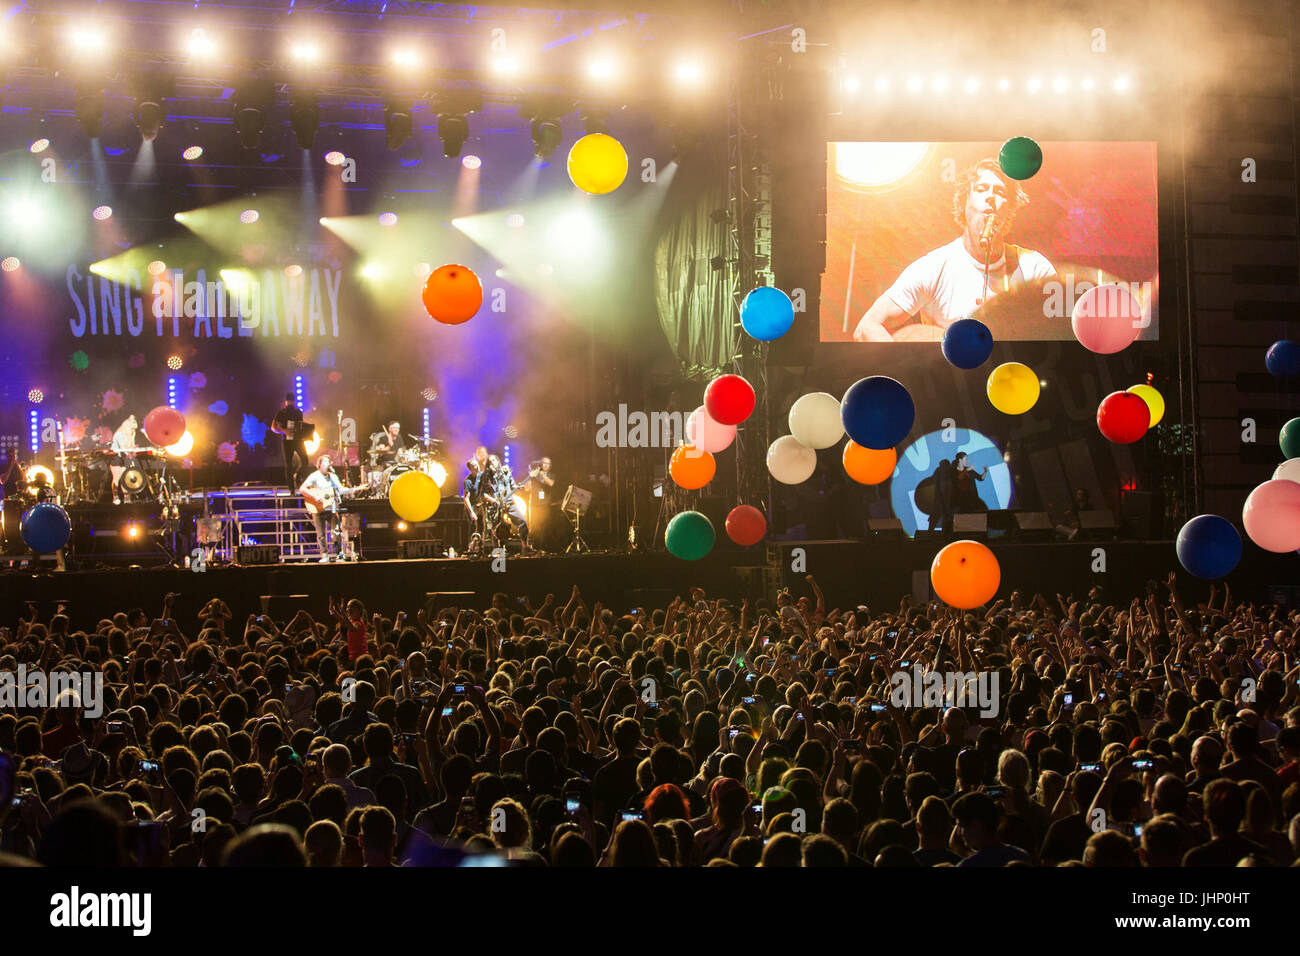 Festival de Jazz de Montreal, concierto al aire libre por la noche con multitudes de personas y músicos en el escenario, globos flotando en el aire por encima de la multitud Foto de stock